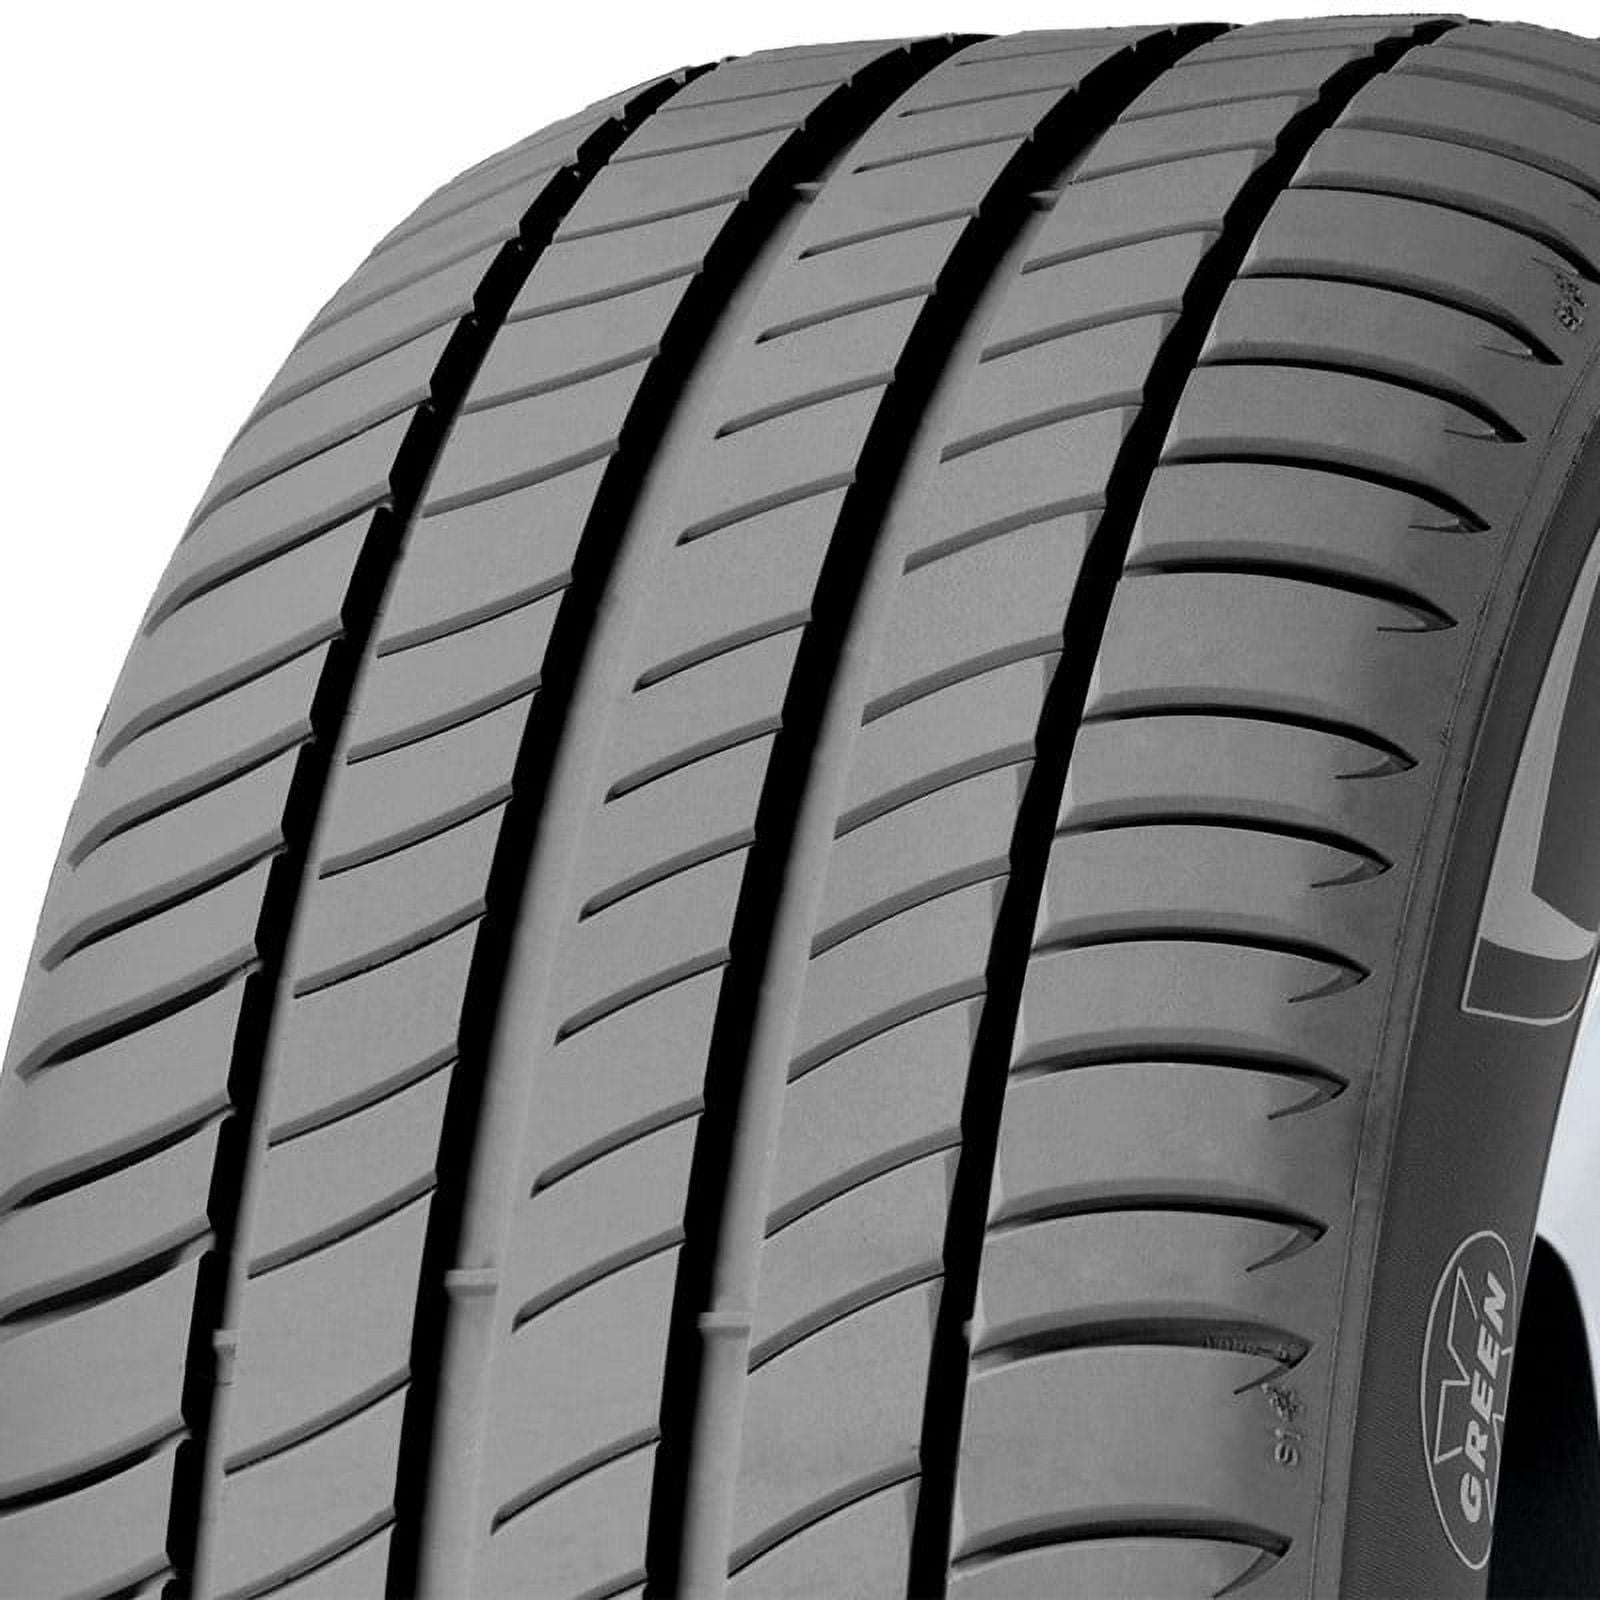 Michelin Primacy 3 Highway Tire 225/45R17 91W